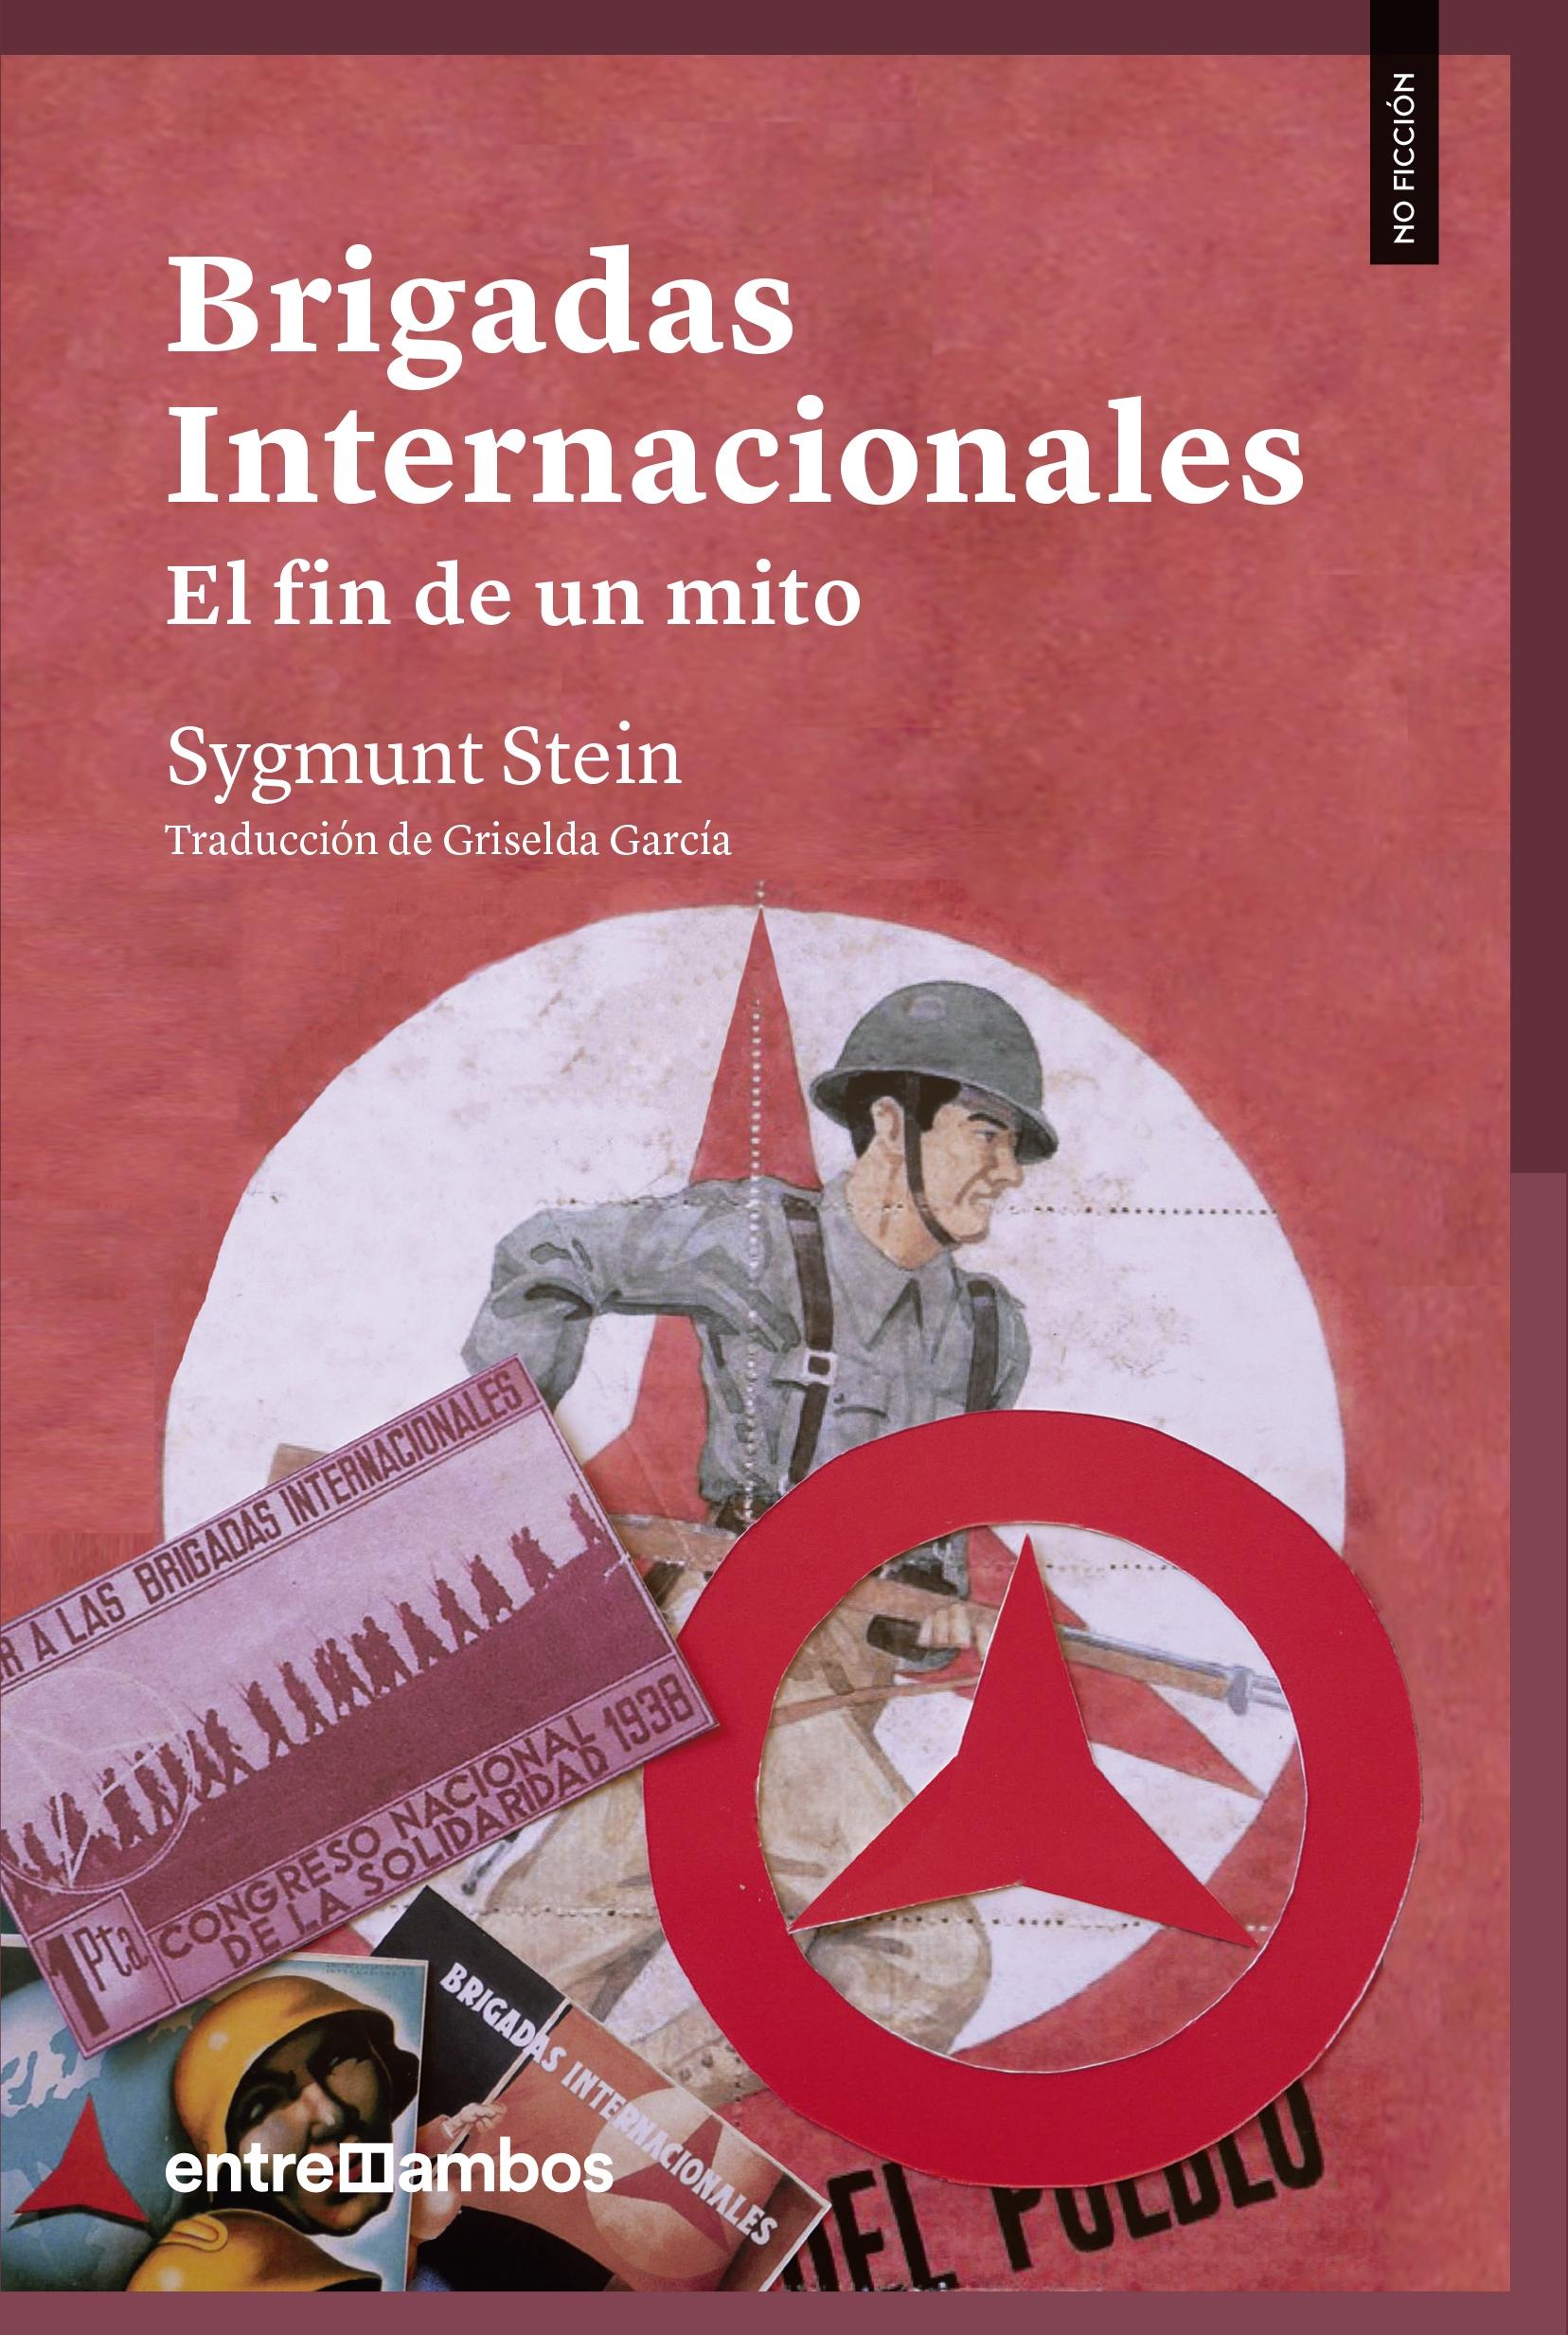 Brigadas Internacionales "El Fin de un Mito". 